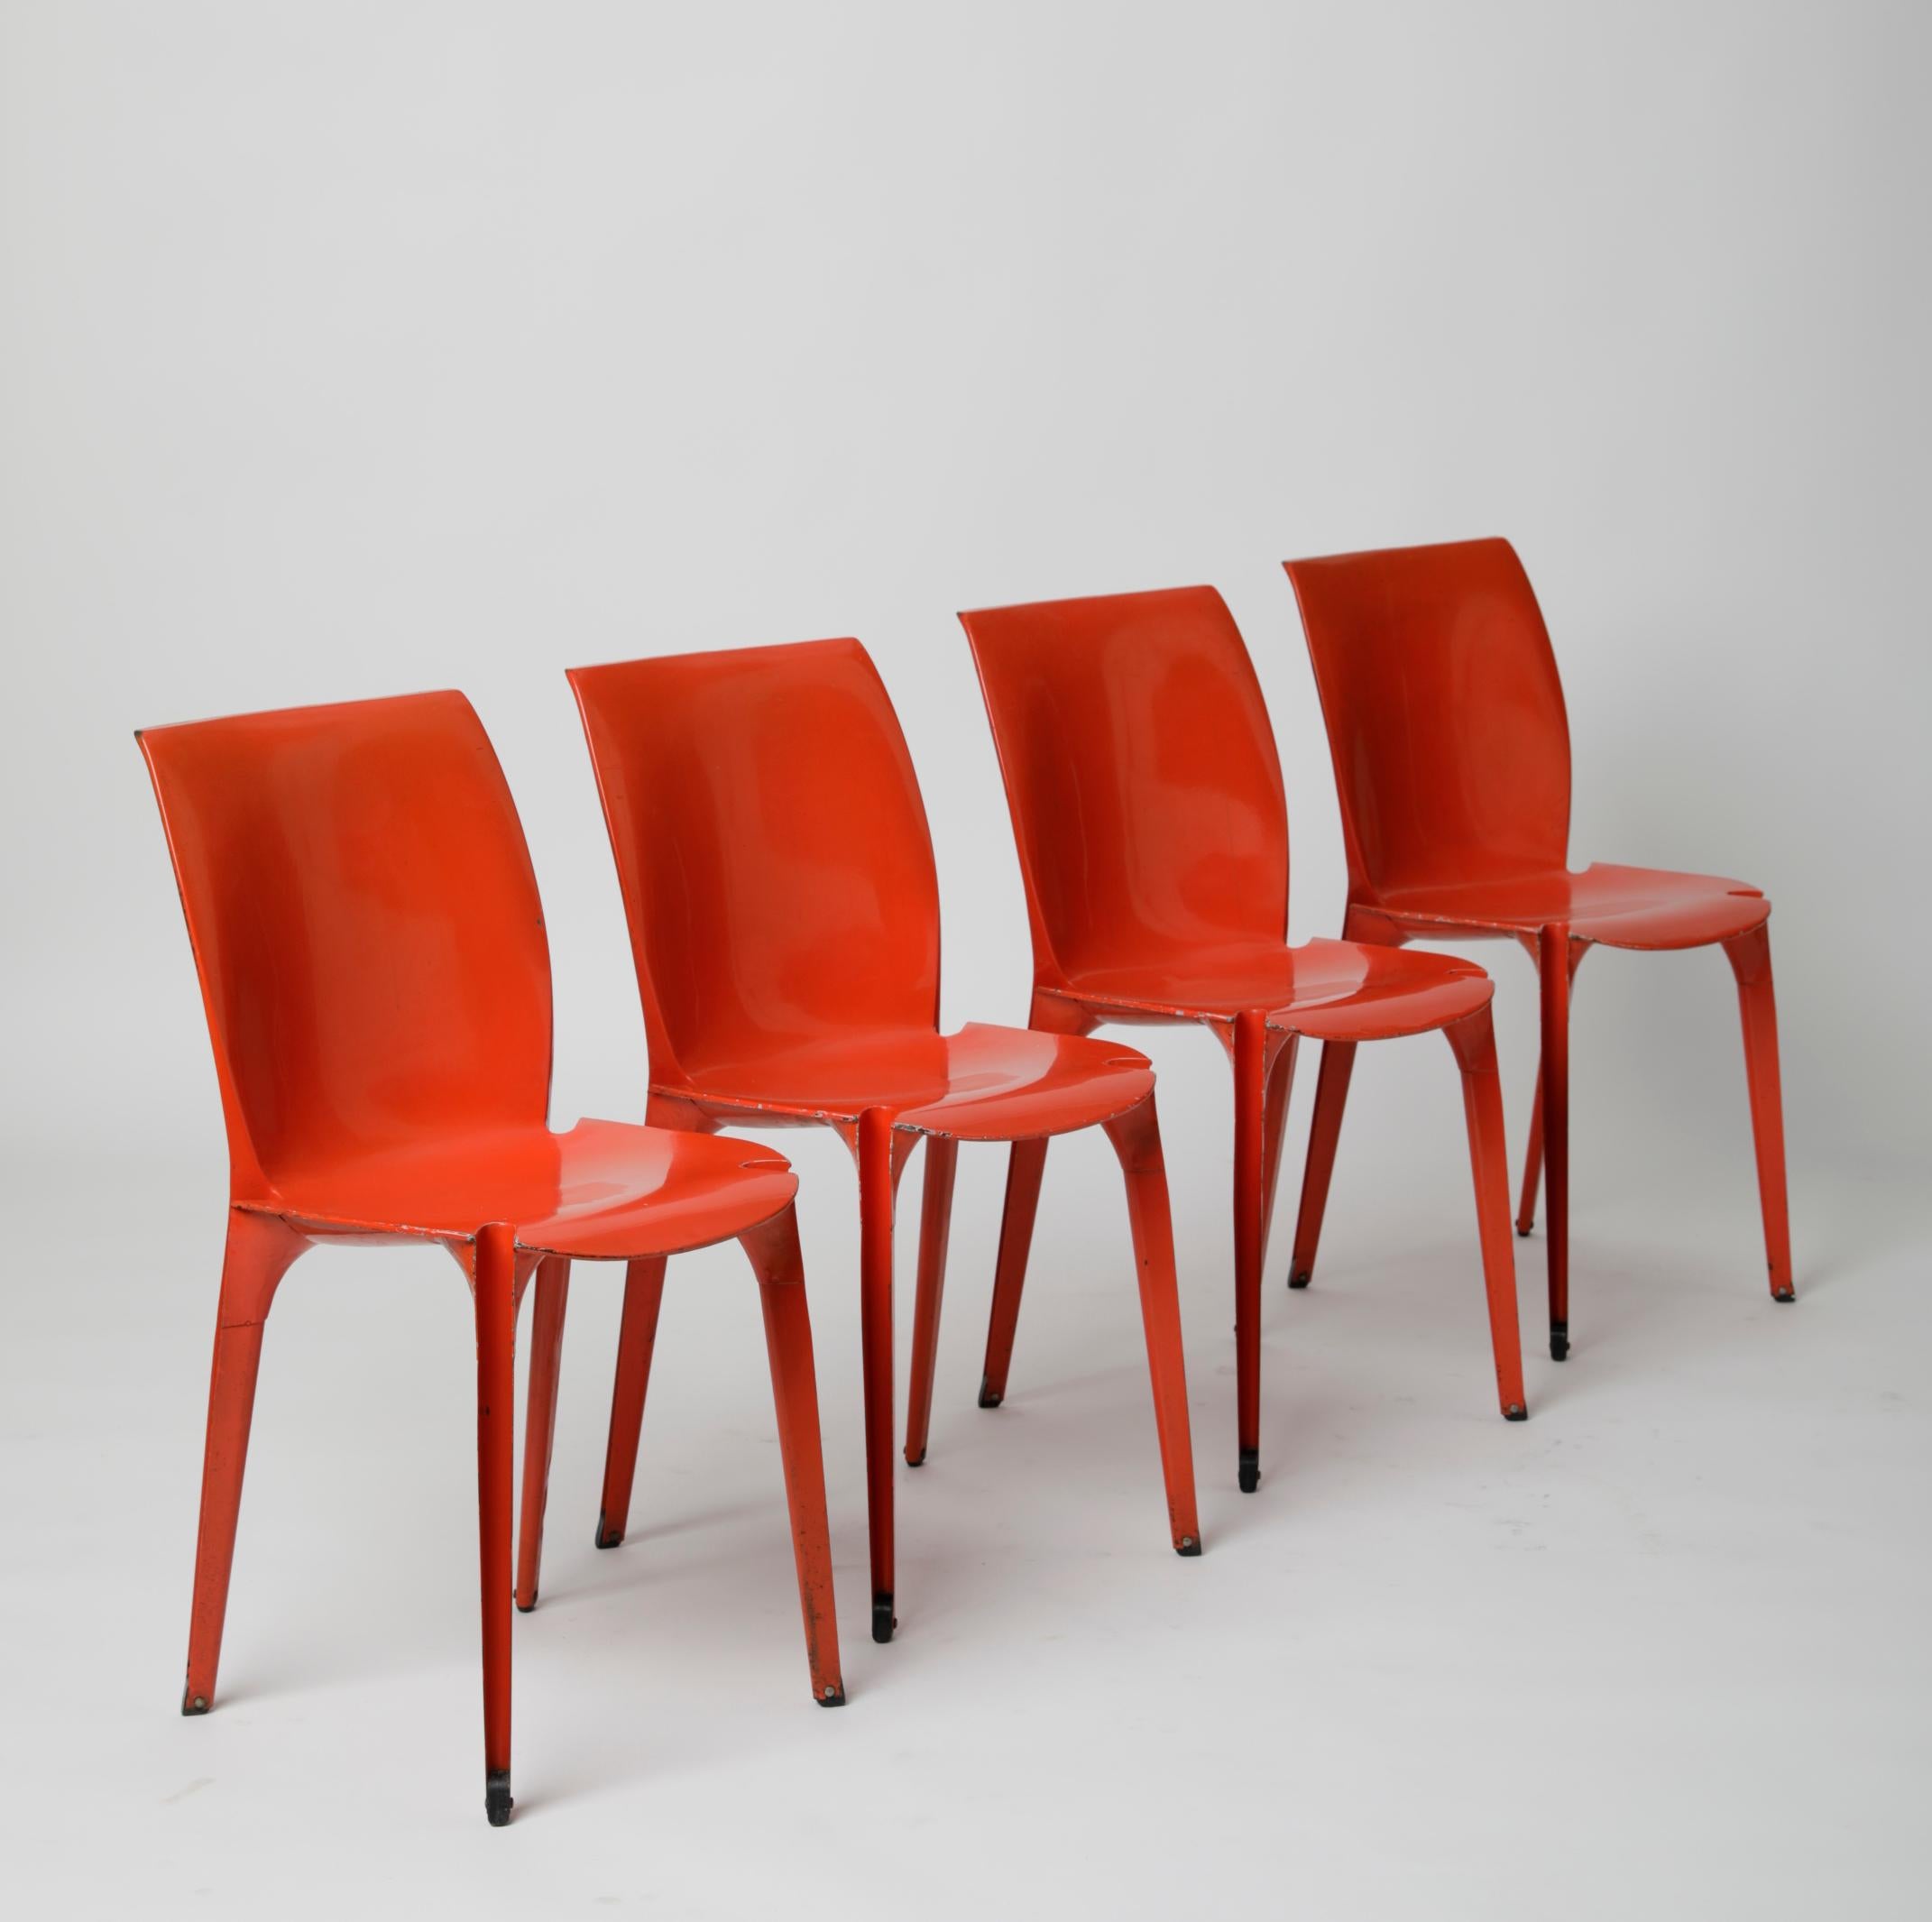 Enameled Marco Zanuso & Richard Sapper,  ‘Lambda’ Chairs, Gavina Production, Italy, 1959